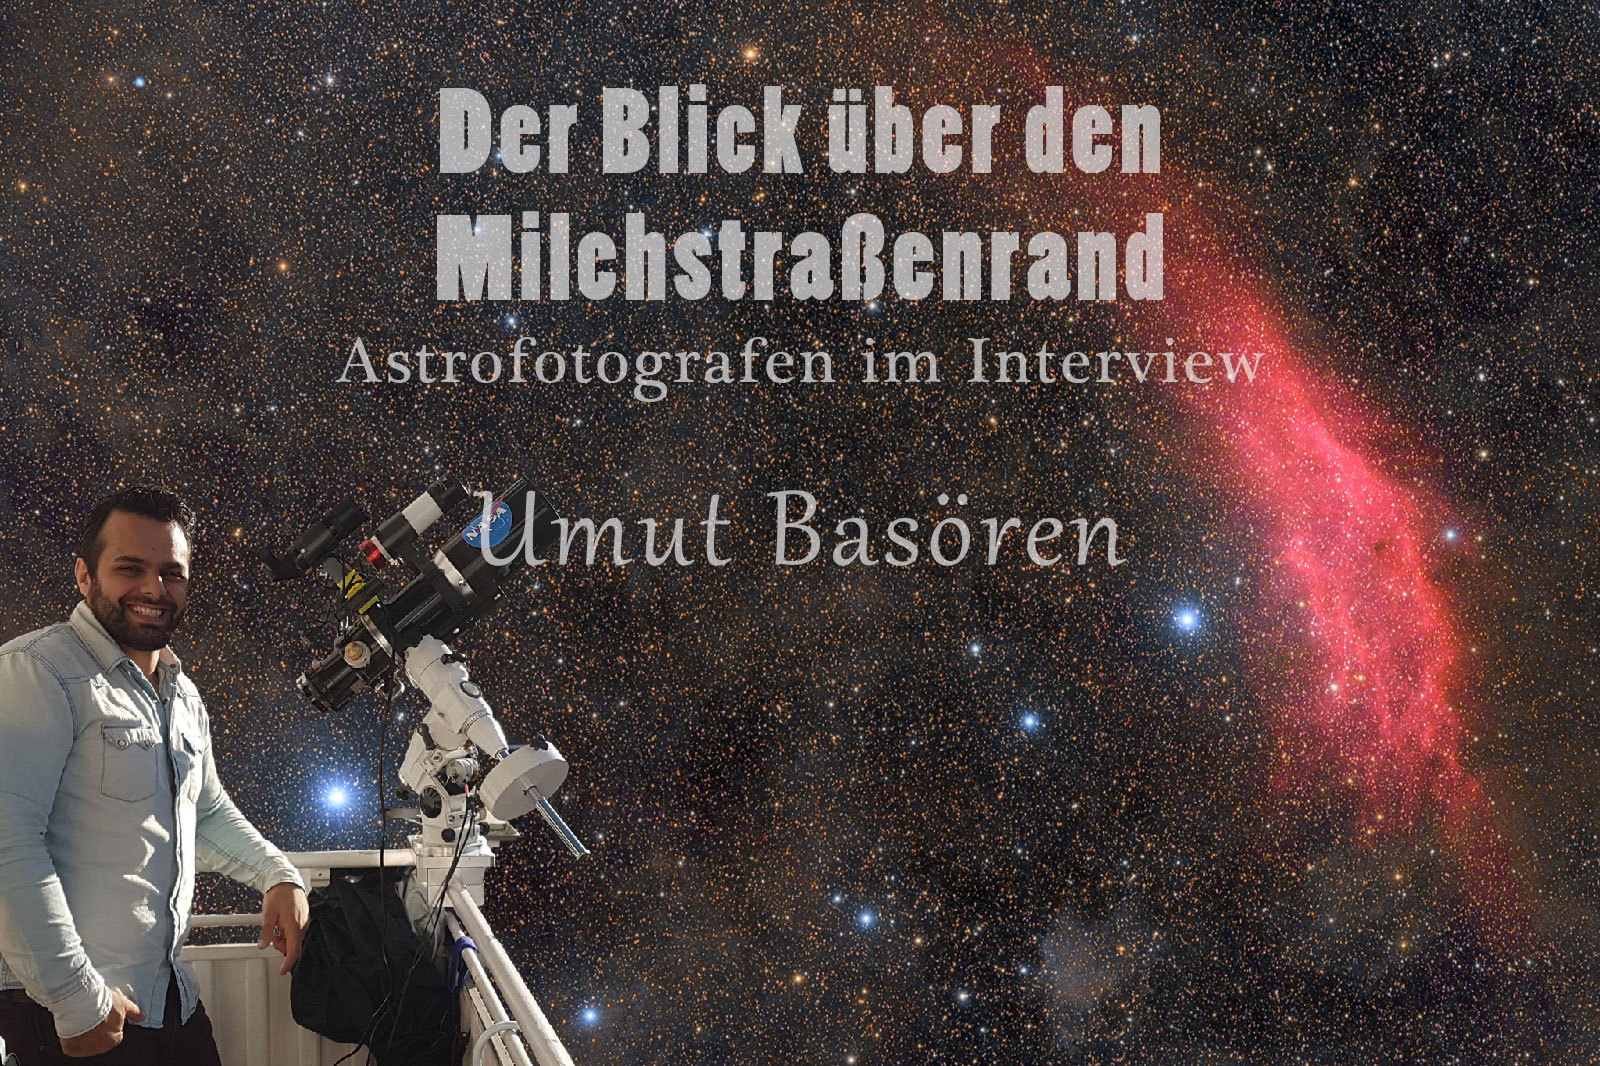 Der Blick über den Milchstraßenrand - Astrofotografen im Interview